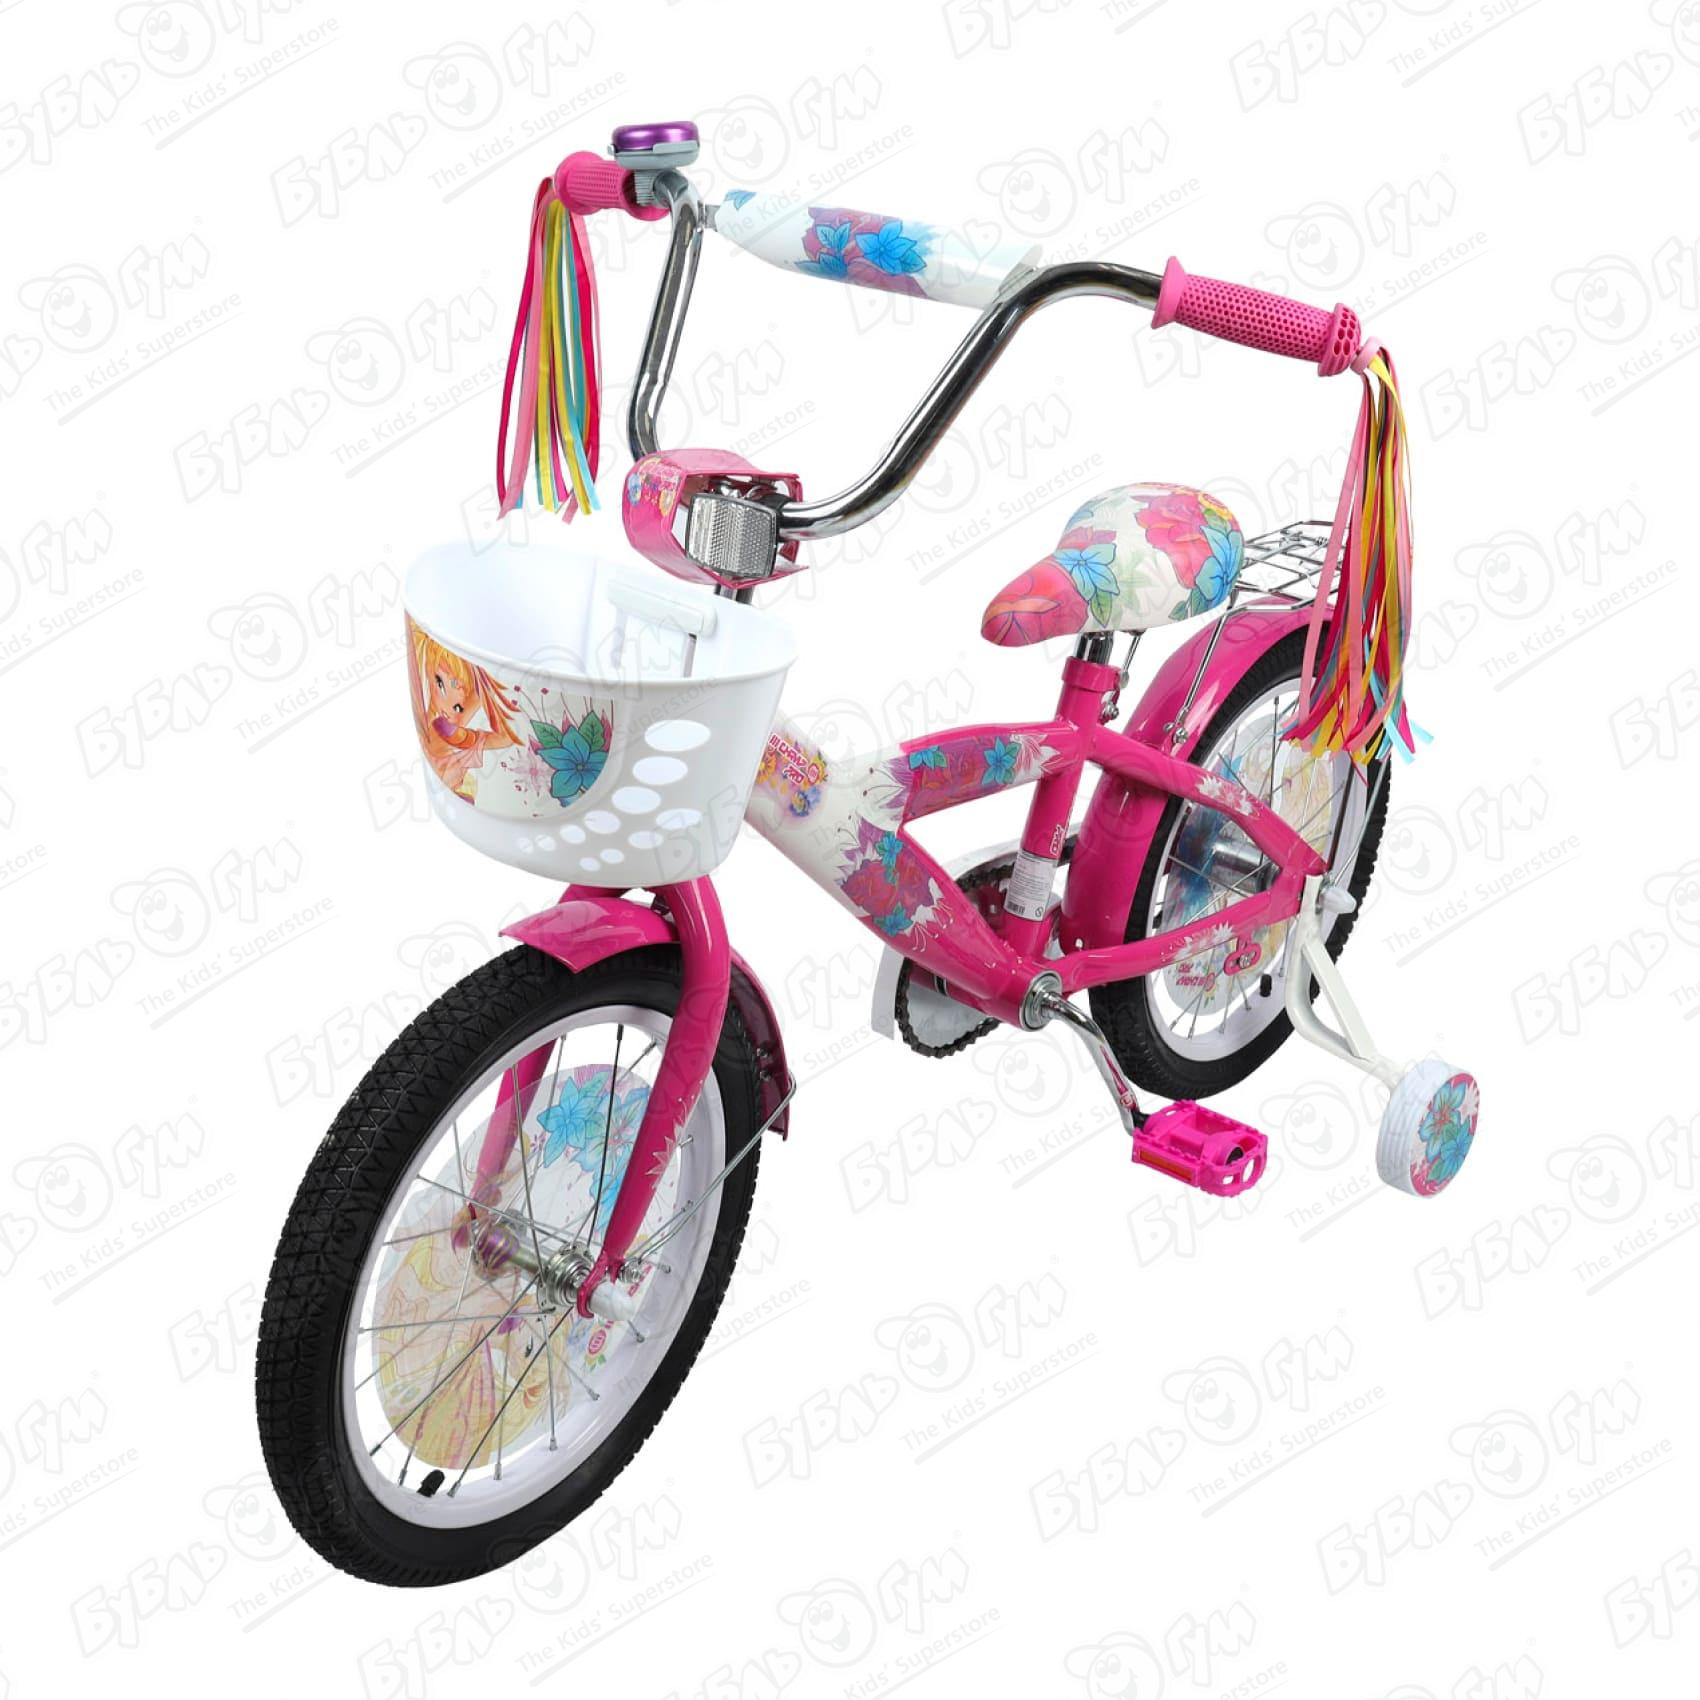 Велосипед Champ Pro G16 с корзиной и светоотражателем розовый велосипед champ pro g16 с корзиной и светоотражателем розовый